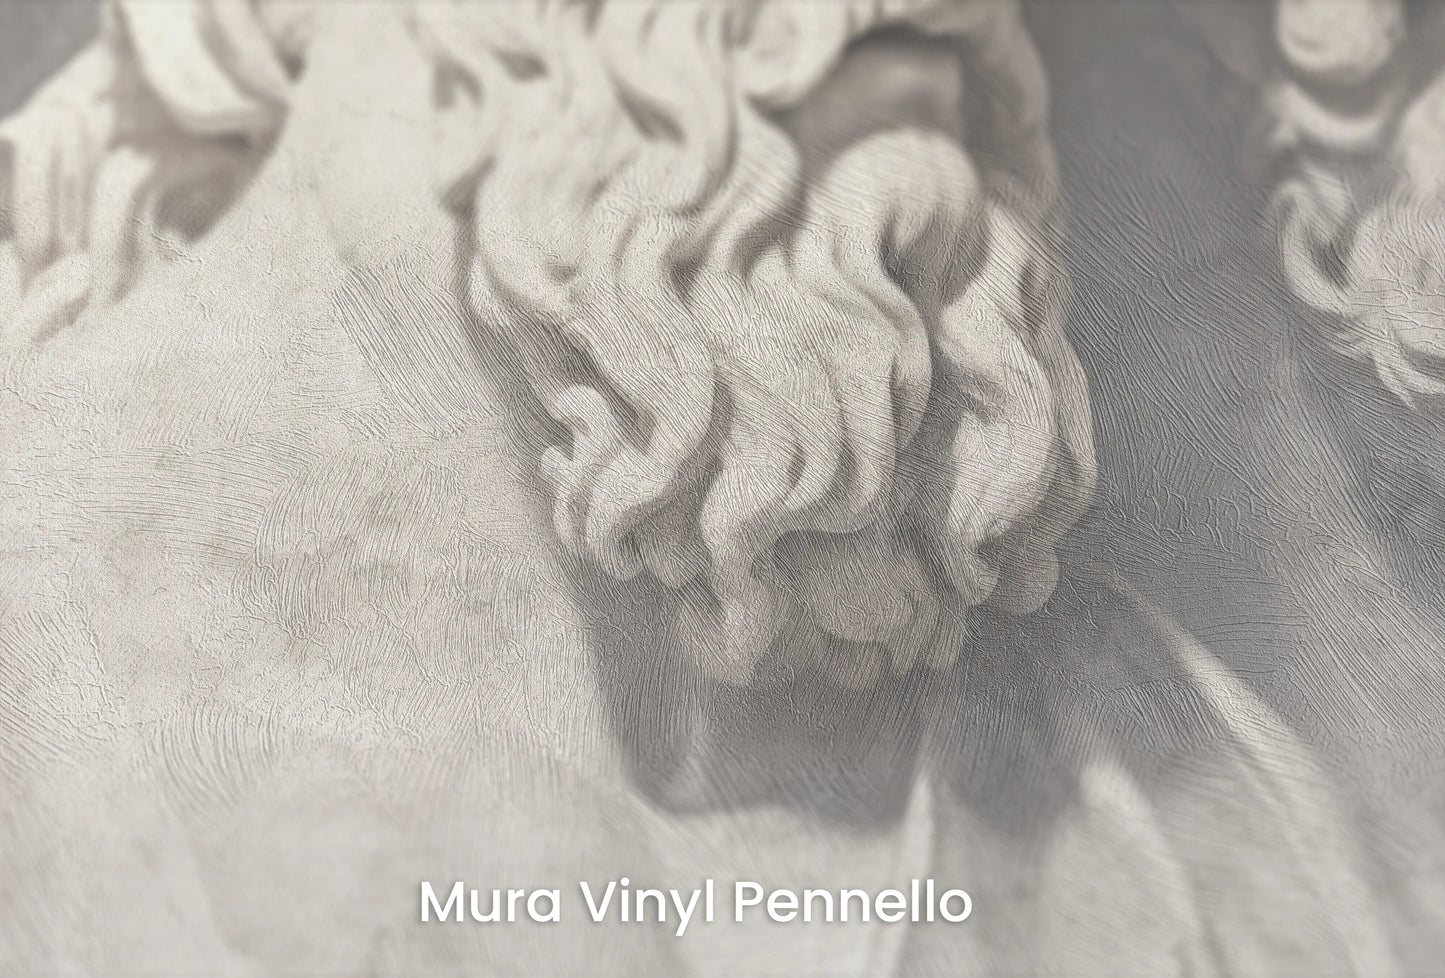 Zbliżenie na artystyczną fototapetę o nazwie Divine Gaze na podłożu Mura Vinyl Pennello - faktura pociągnięć pędzla malarskiego.